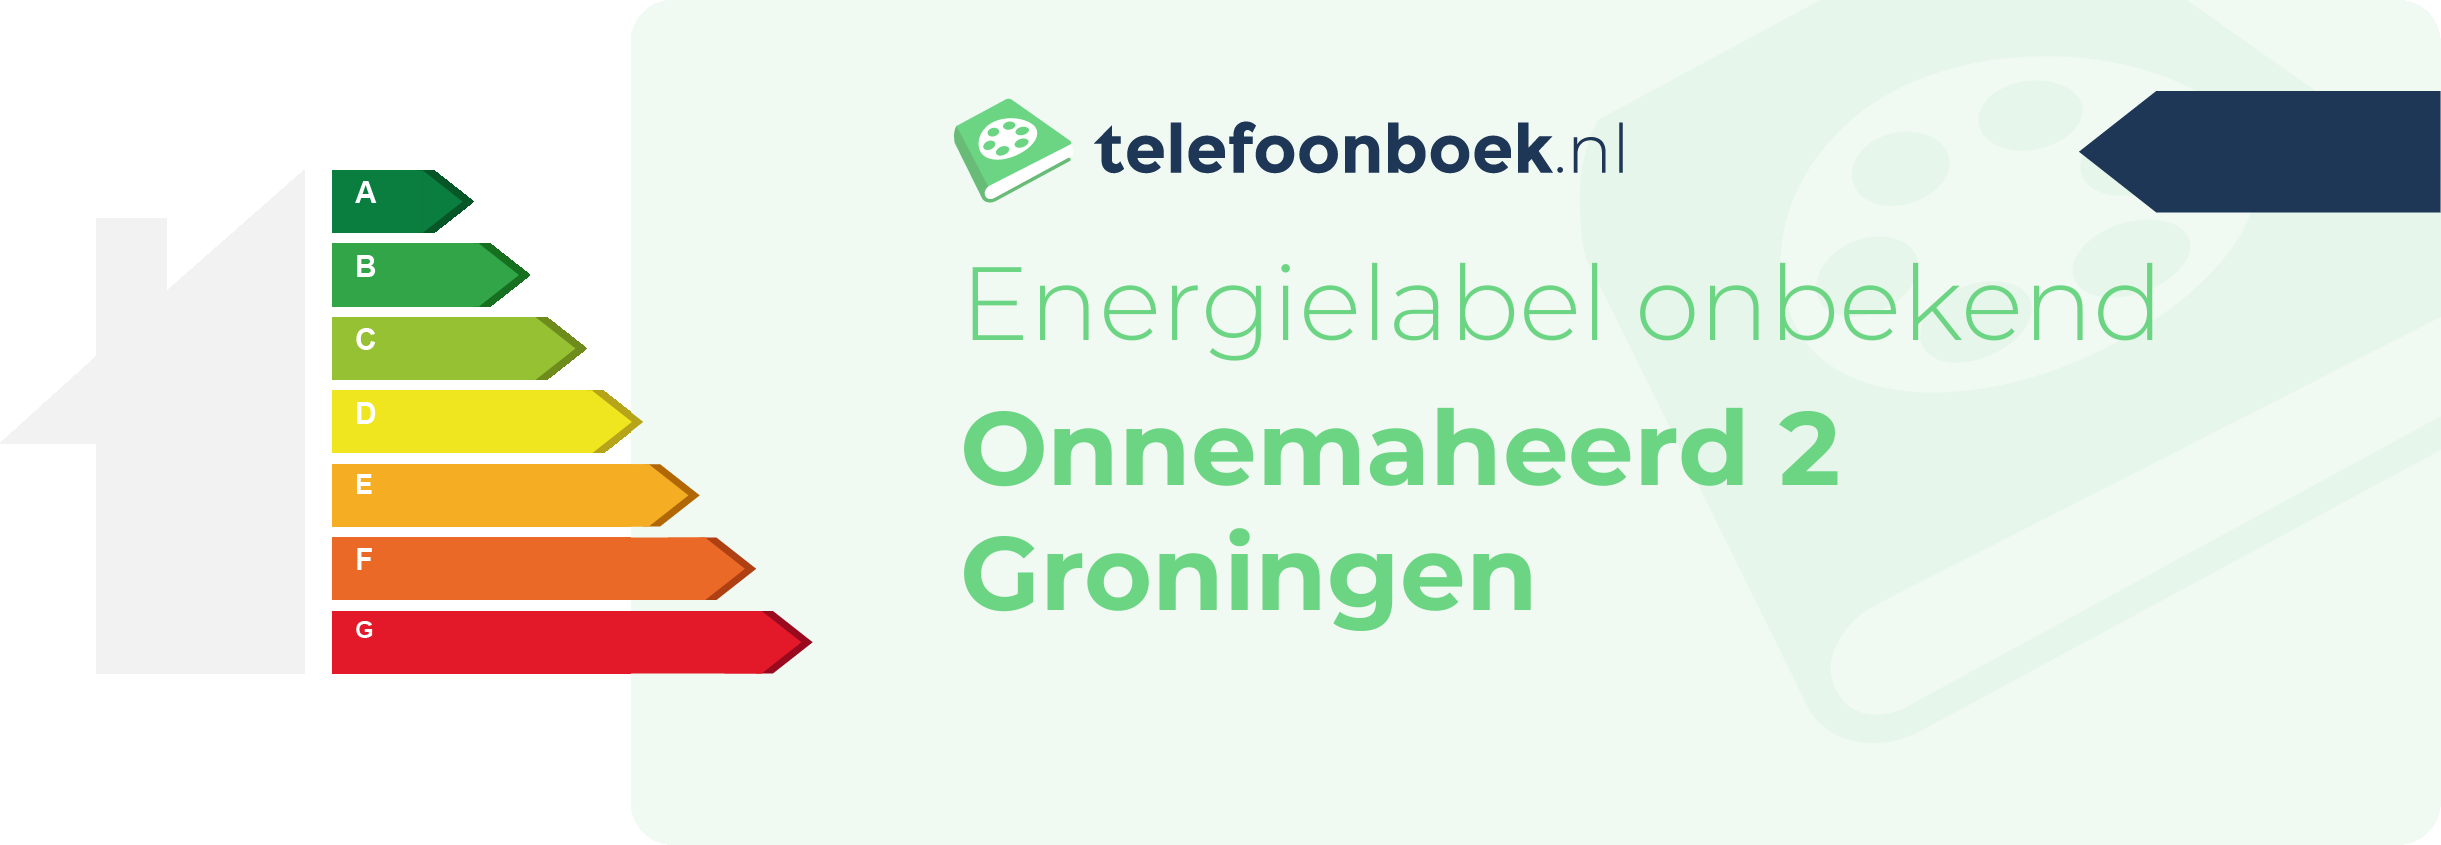 Energielabel Onnemaheerd 2 Groningen